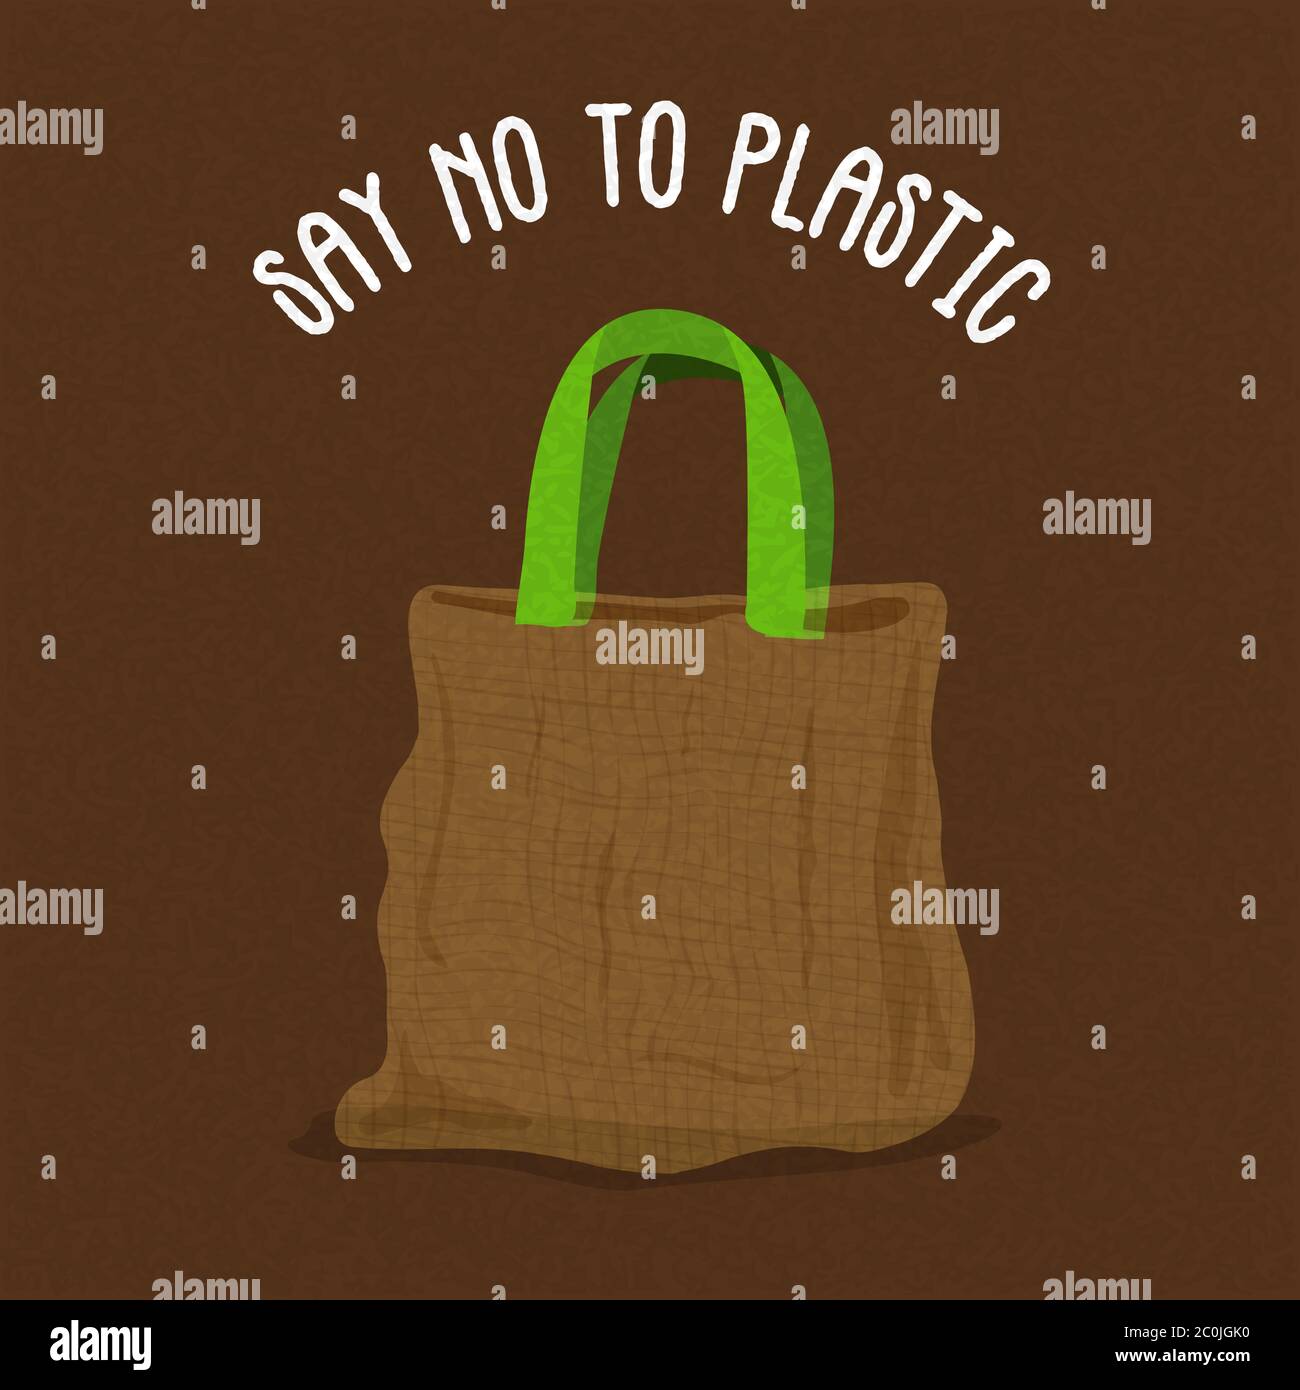 Dire no all'illustrazione in plastica per l'uso di sacchetti di carta in shopping d'affari. Etichetta della campagna ambientale o design ecocompatibile. Illustrazione Vettoriale